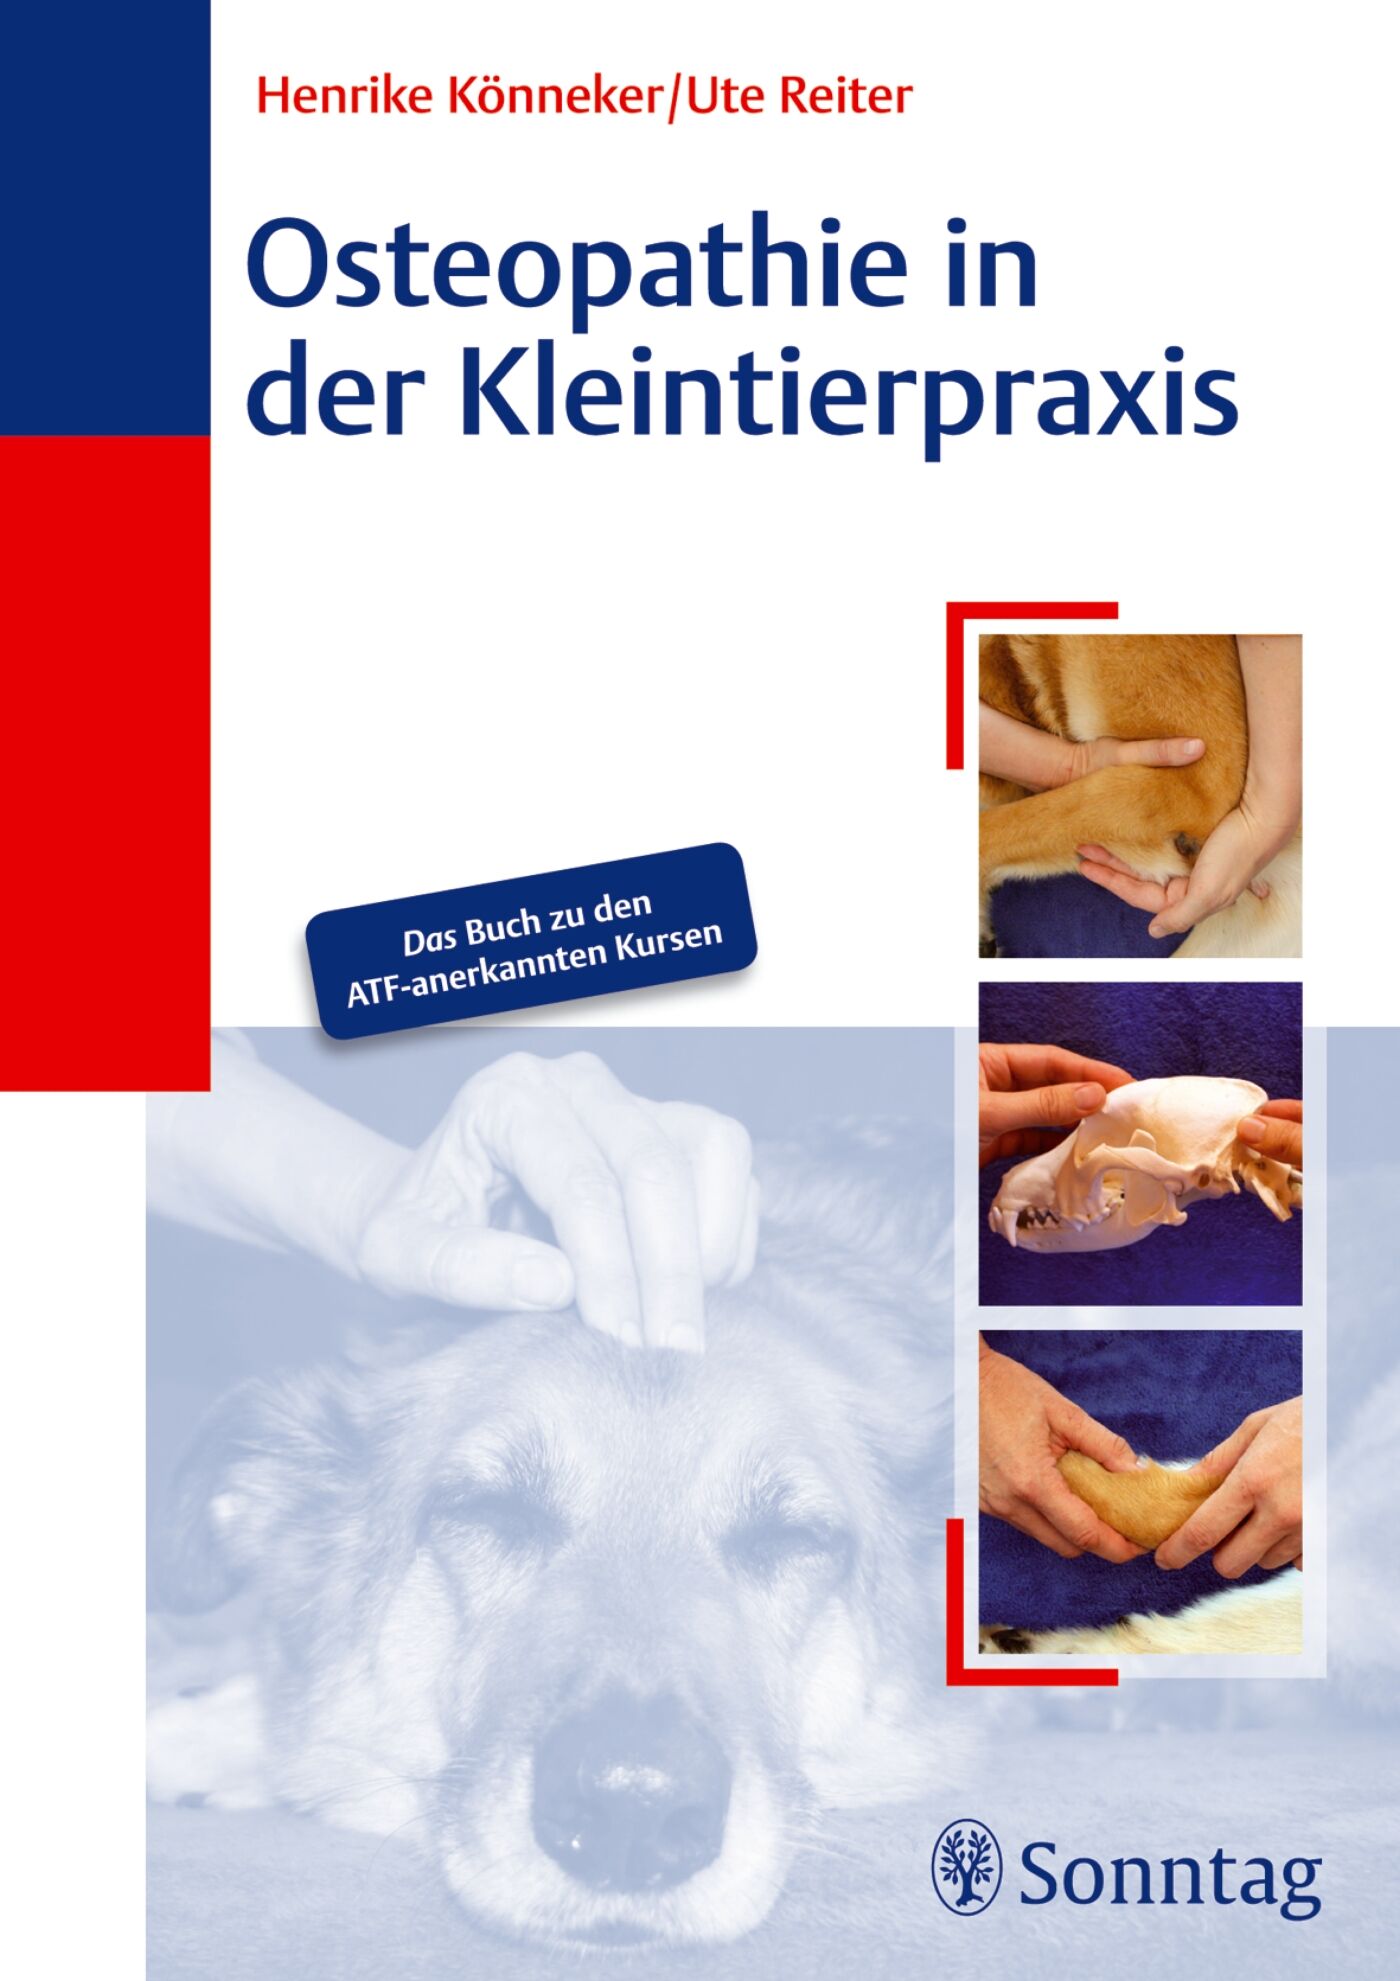 Osteopathie in der Kleintierpraxis, 9783830493891